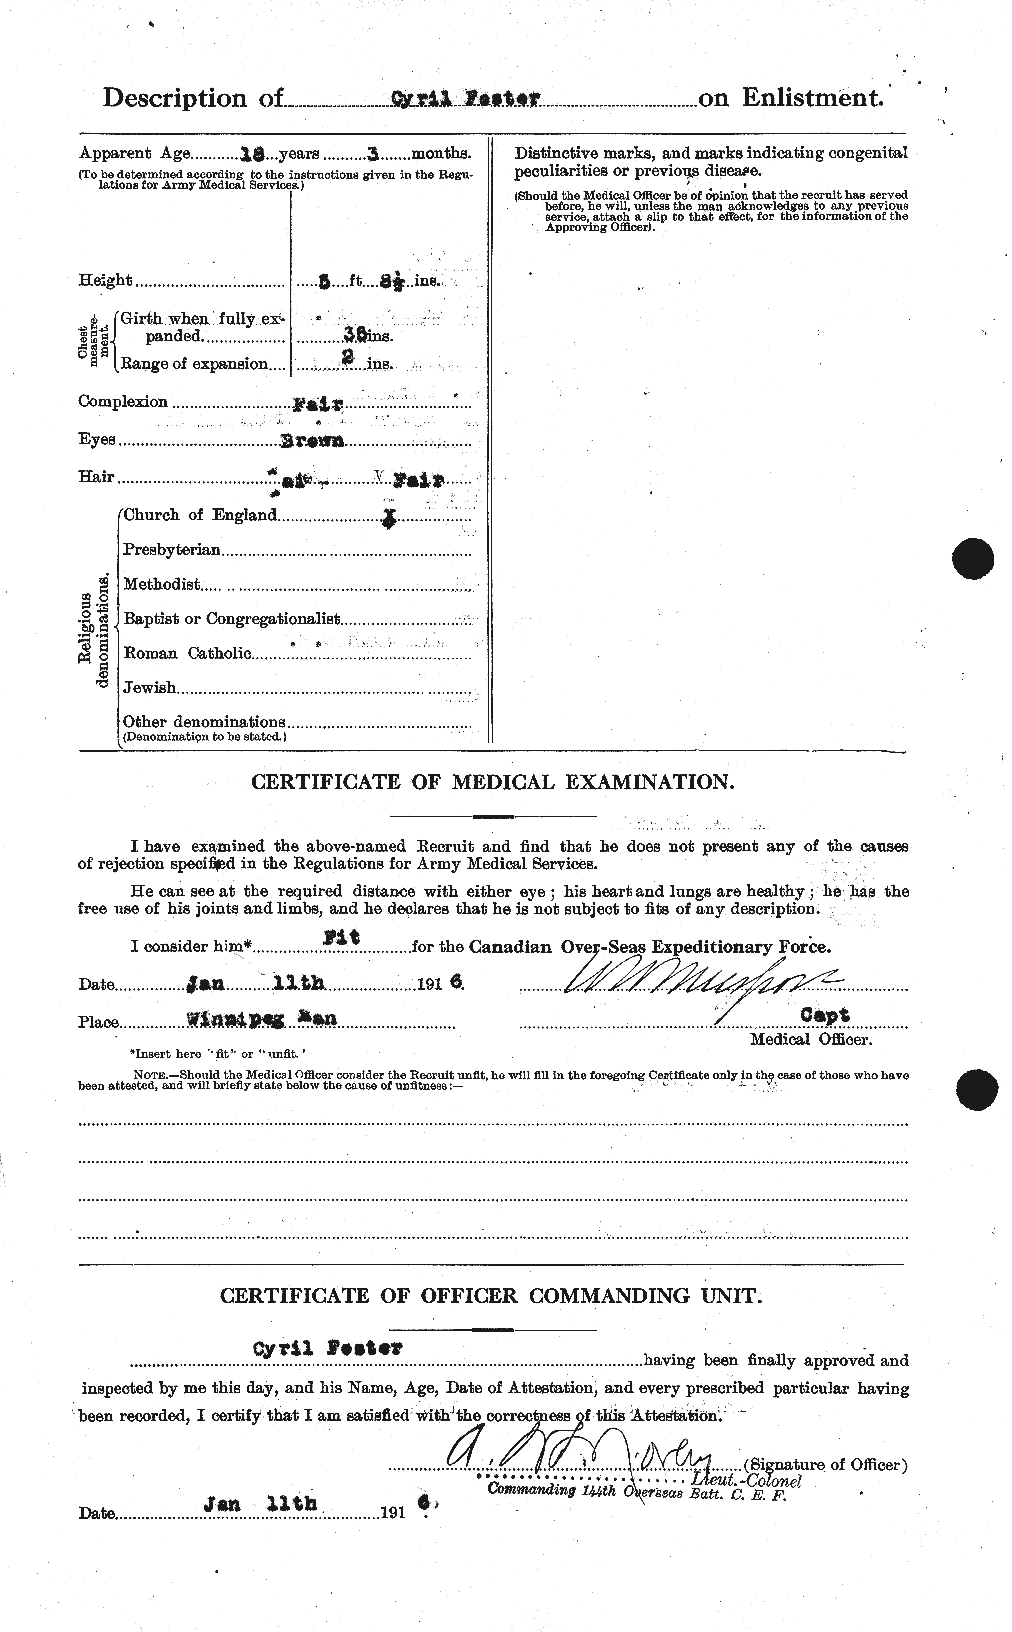 Dossiers du Personnel de la Première Guerre mondiale - CEC 330551b